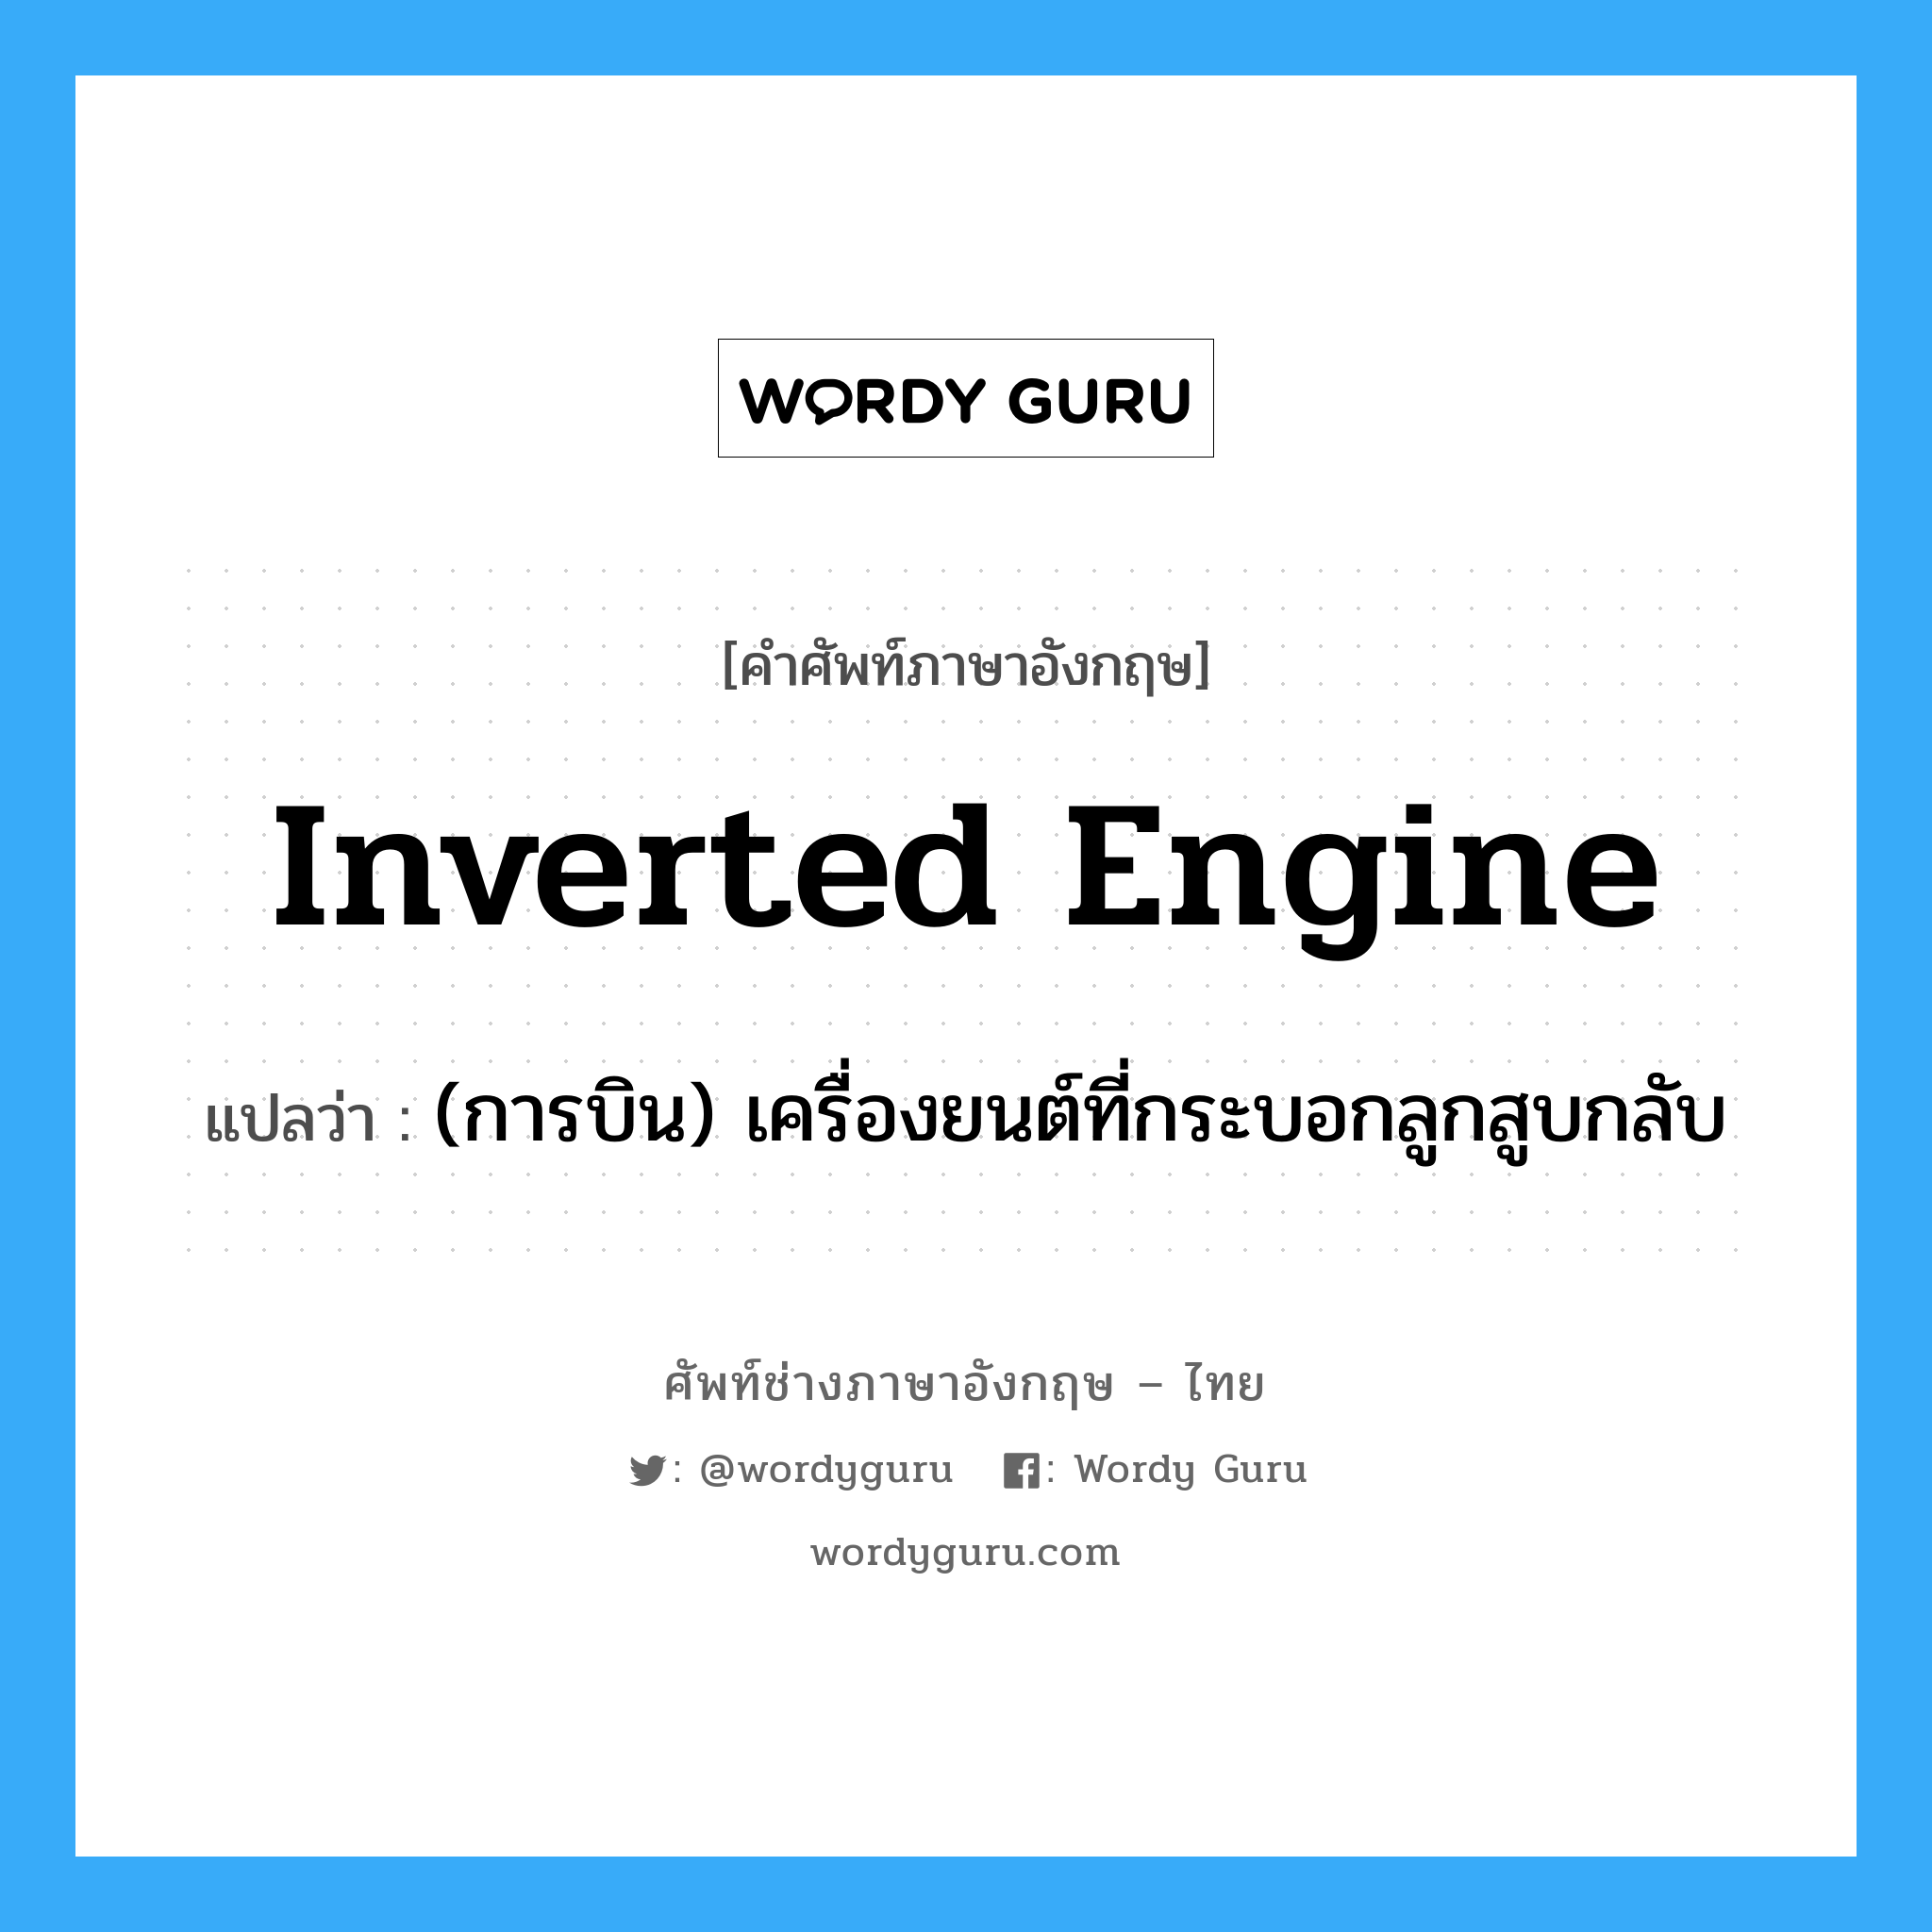 inverted engine แปลว่า?, คำศัพท์ช่างภาษาอังกฤษ - ไทย inverted engine คำศัพท์ภาษาอังกฤษ inverted engine แปลว่า (การบิน) เครื่องยนต์ที่กระบอกลูกสูบกลับ